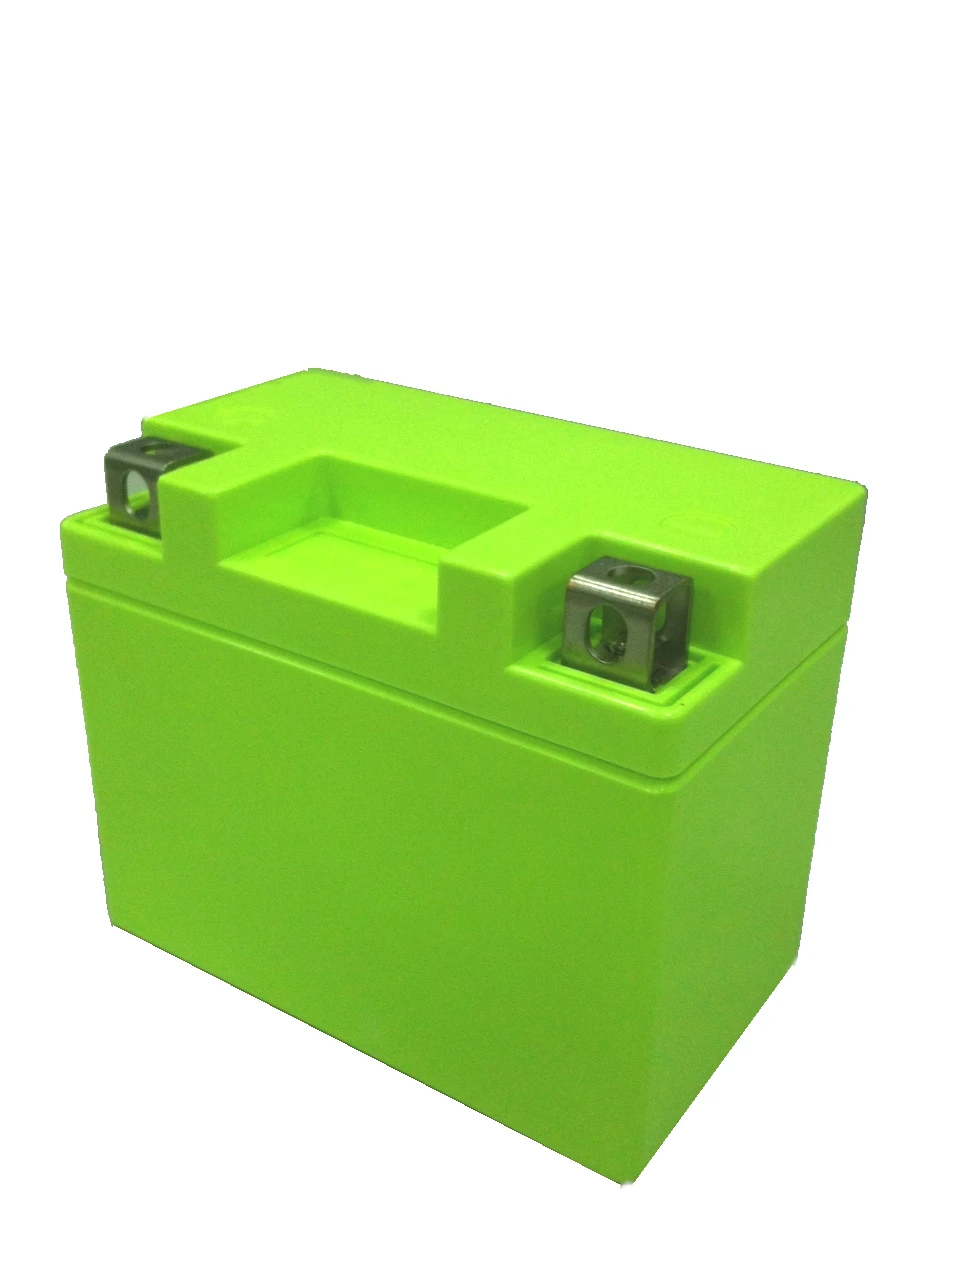 高效率環保綠能重機專用奈米磷酸鋰鐵電瓶